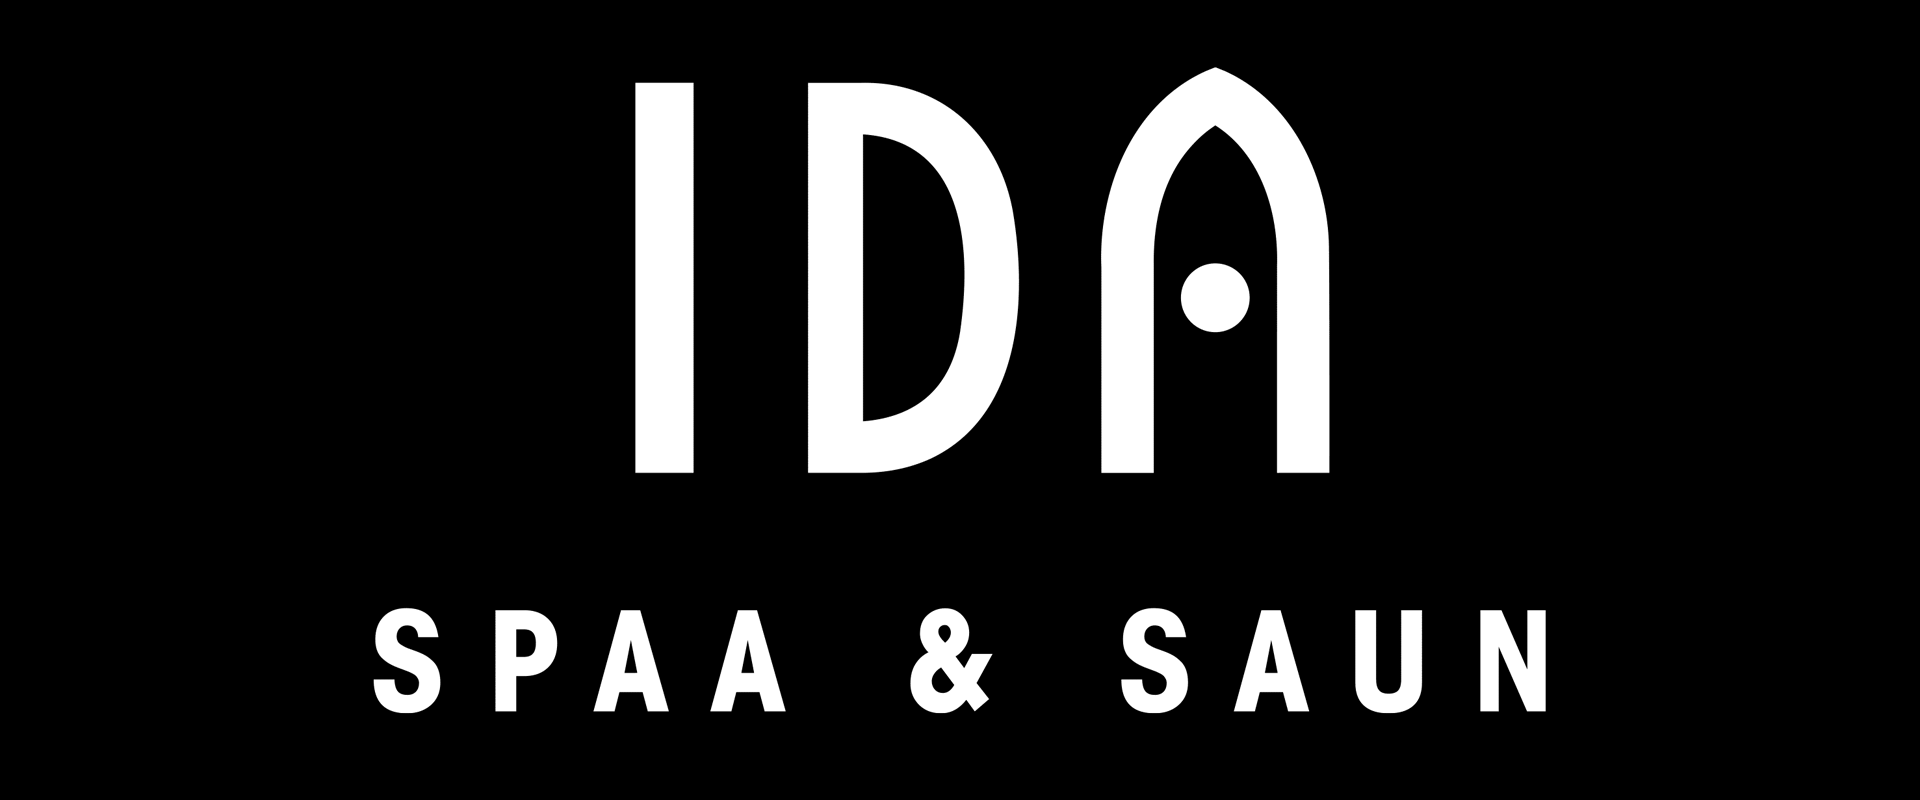 IDA Spa & Sauna